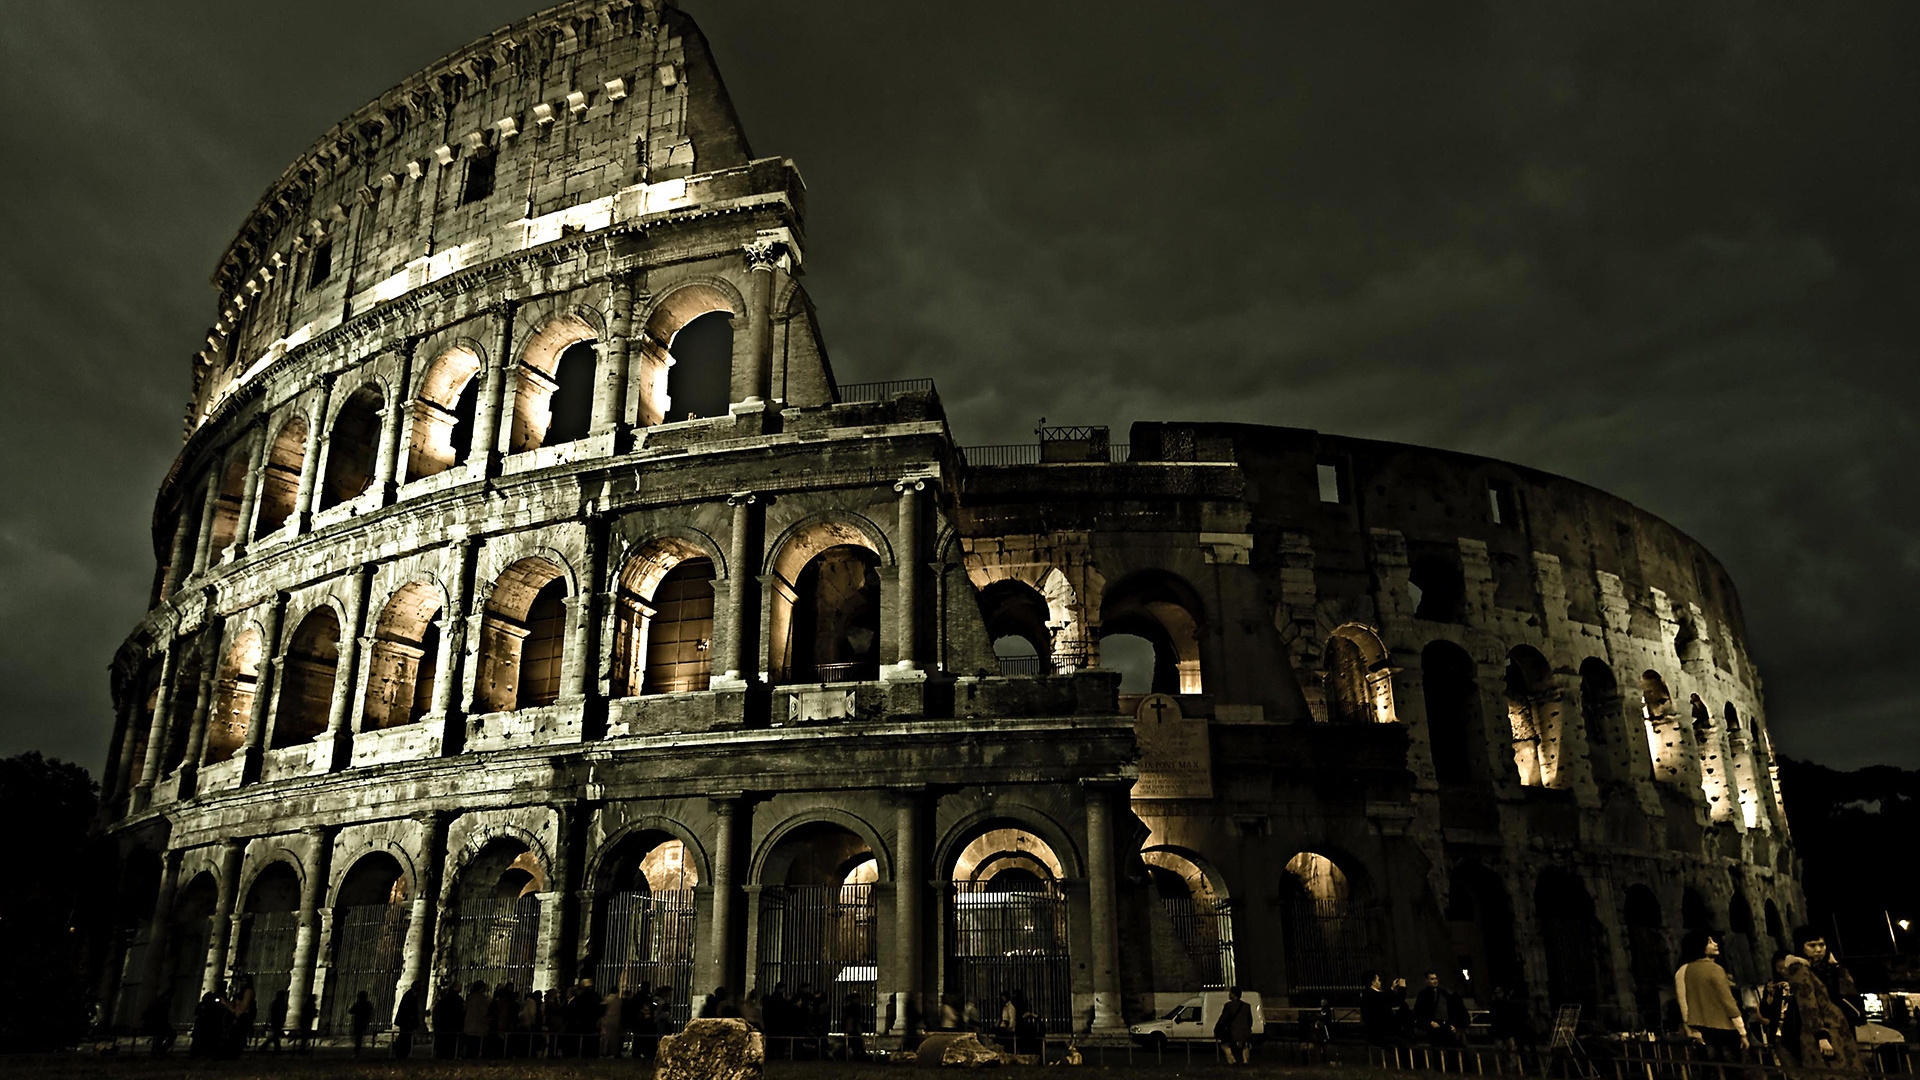 Dark Rome Coliseum for 1920 x 1080 HDTV 1080p resolution